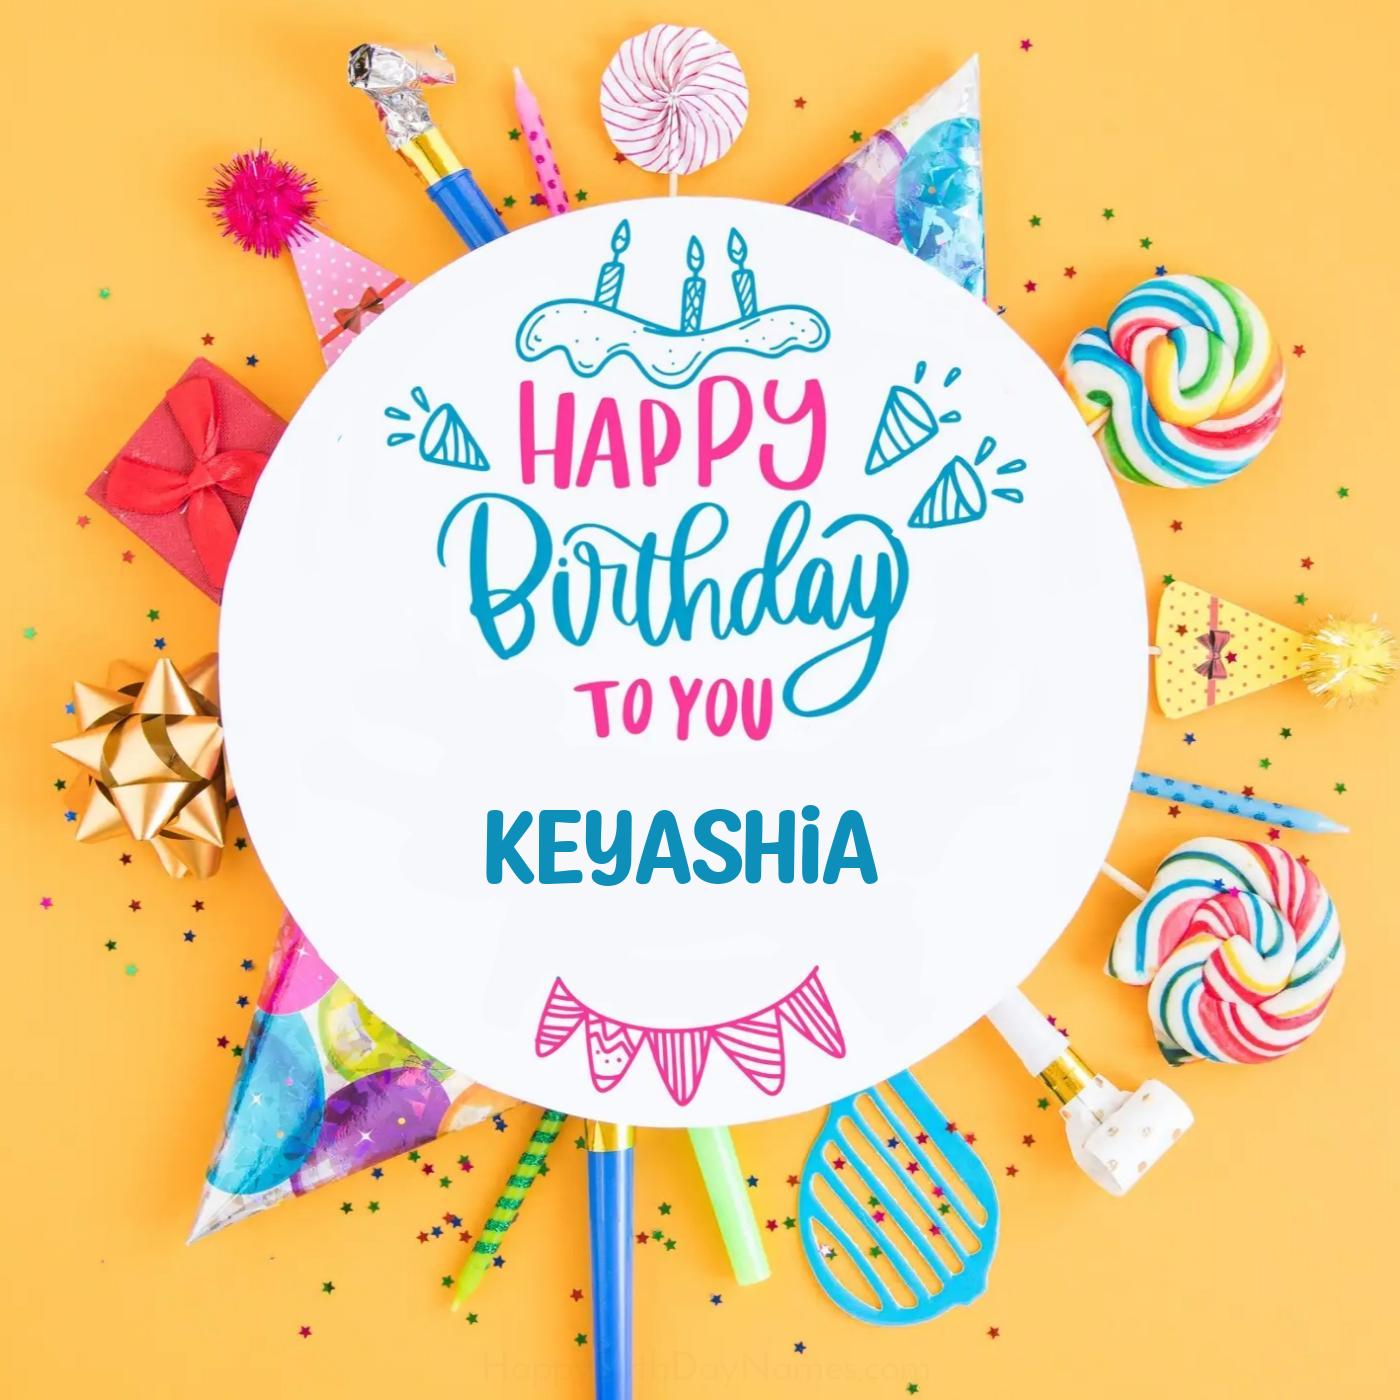 Happy Birthday Keyashia Party Celebration Card